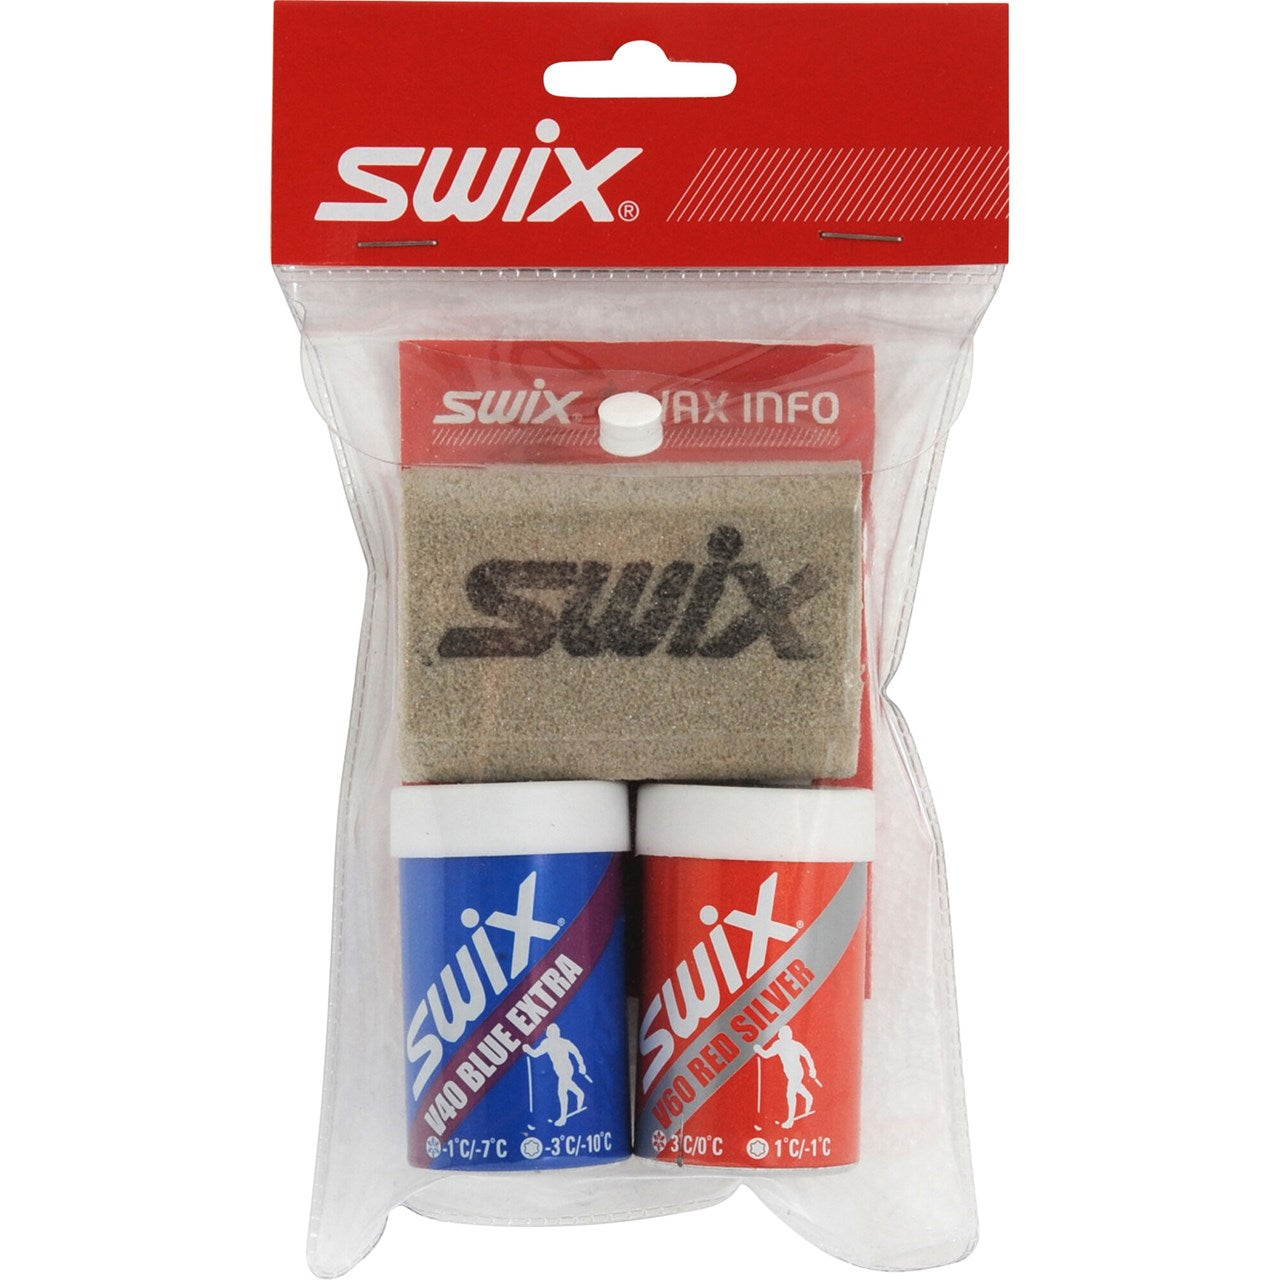 Swix Wax Kit p18